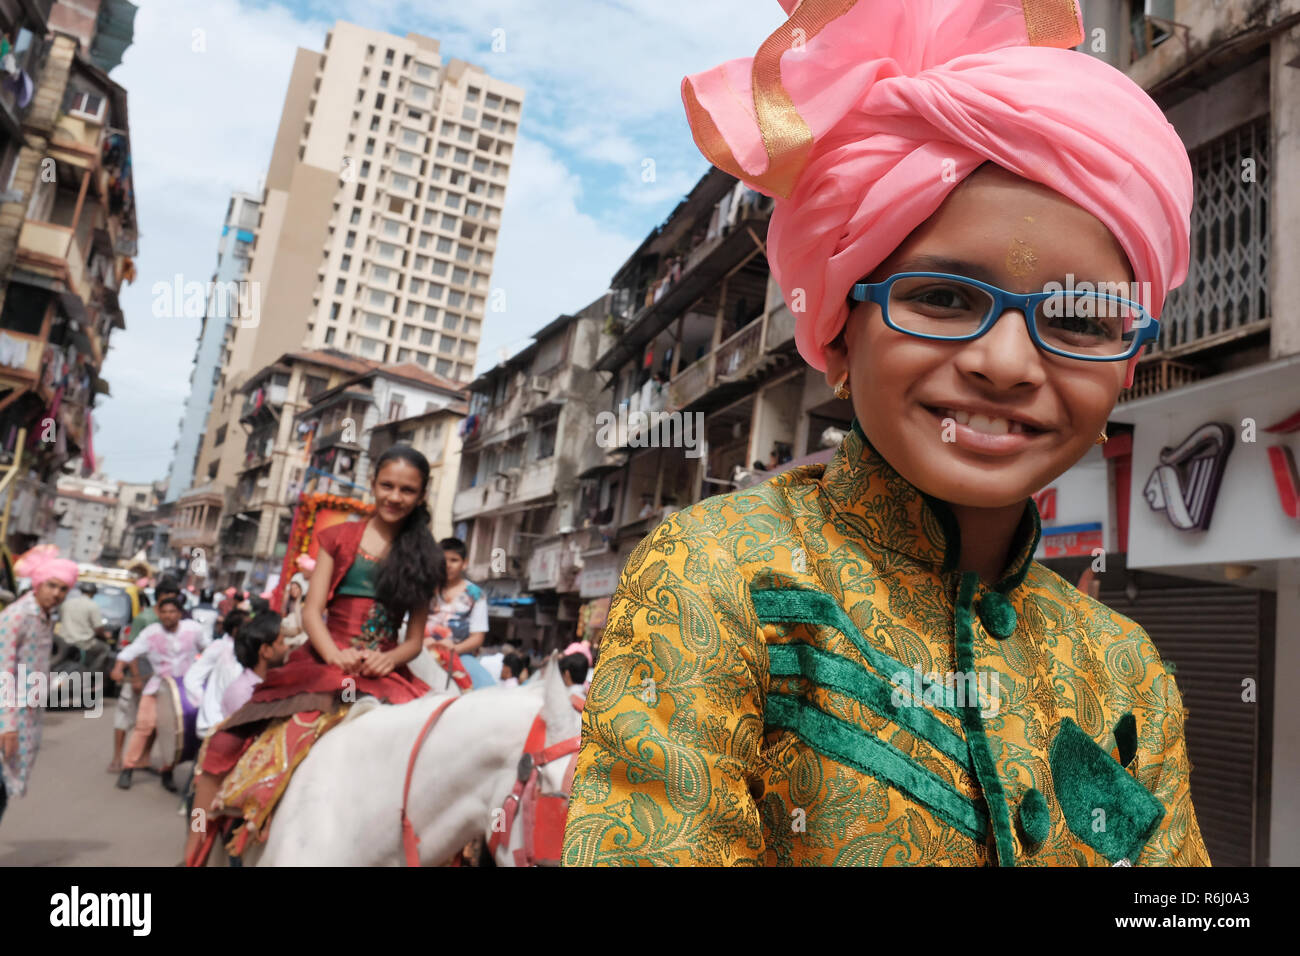 Während ein Hindu Festival der Marwari Gemeinschaft in Mumbai, Indien, Jugendliche sind die Teilnahme an einem Pferd Parade Stockfoto